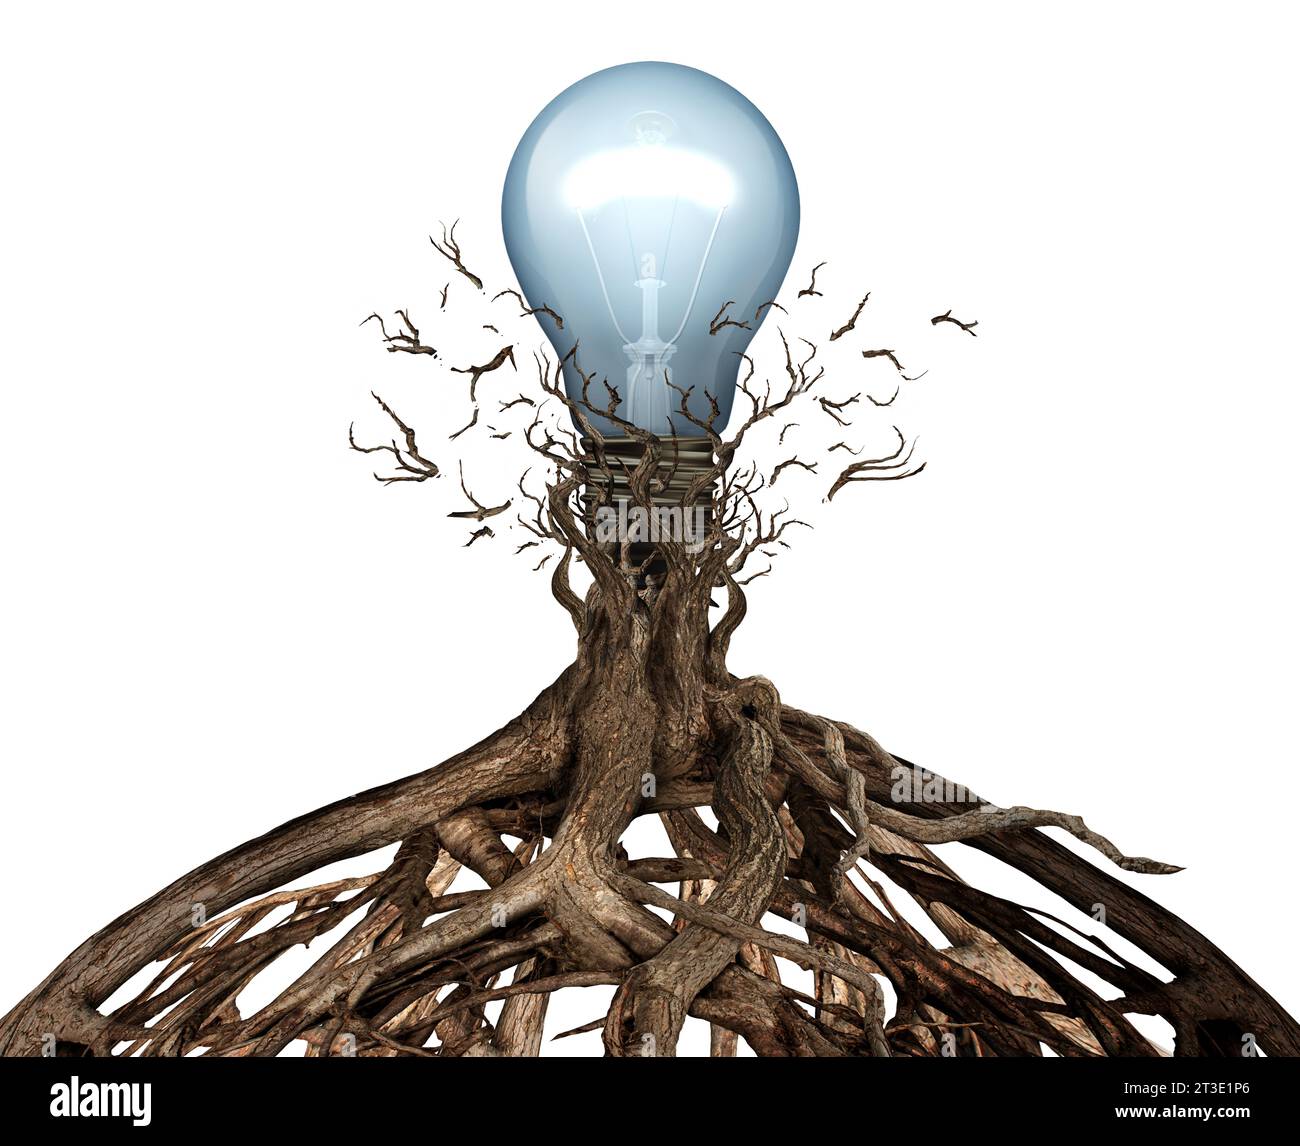 Le concept de puissance des idées en tant que symbole motivant et inspirant de l'apprentissage et de la découverte ou de la nouvelle pensée et du brainstorming en tant qu'ampoule ou lumière Banque D'Images